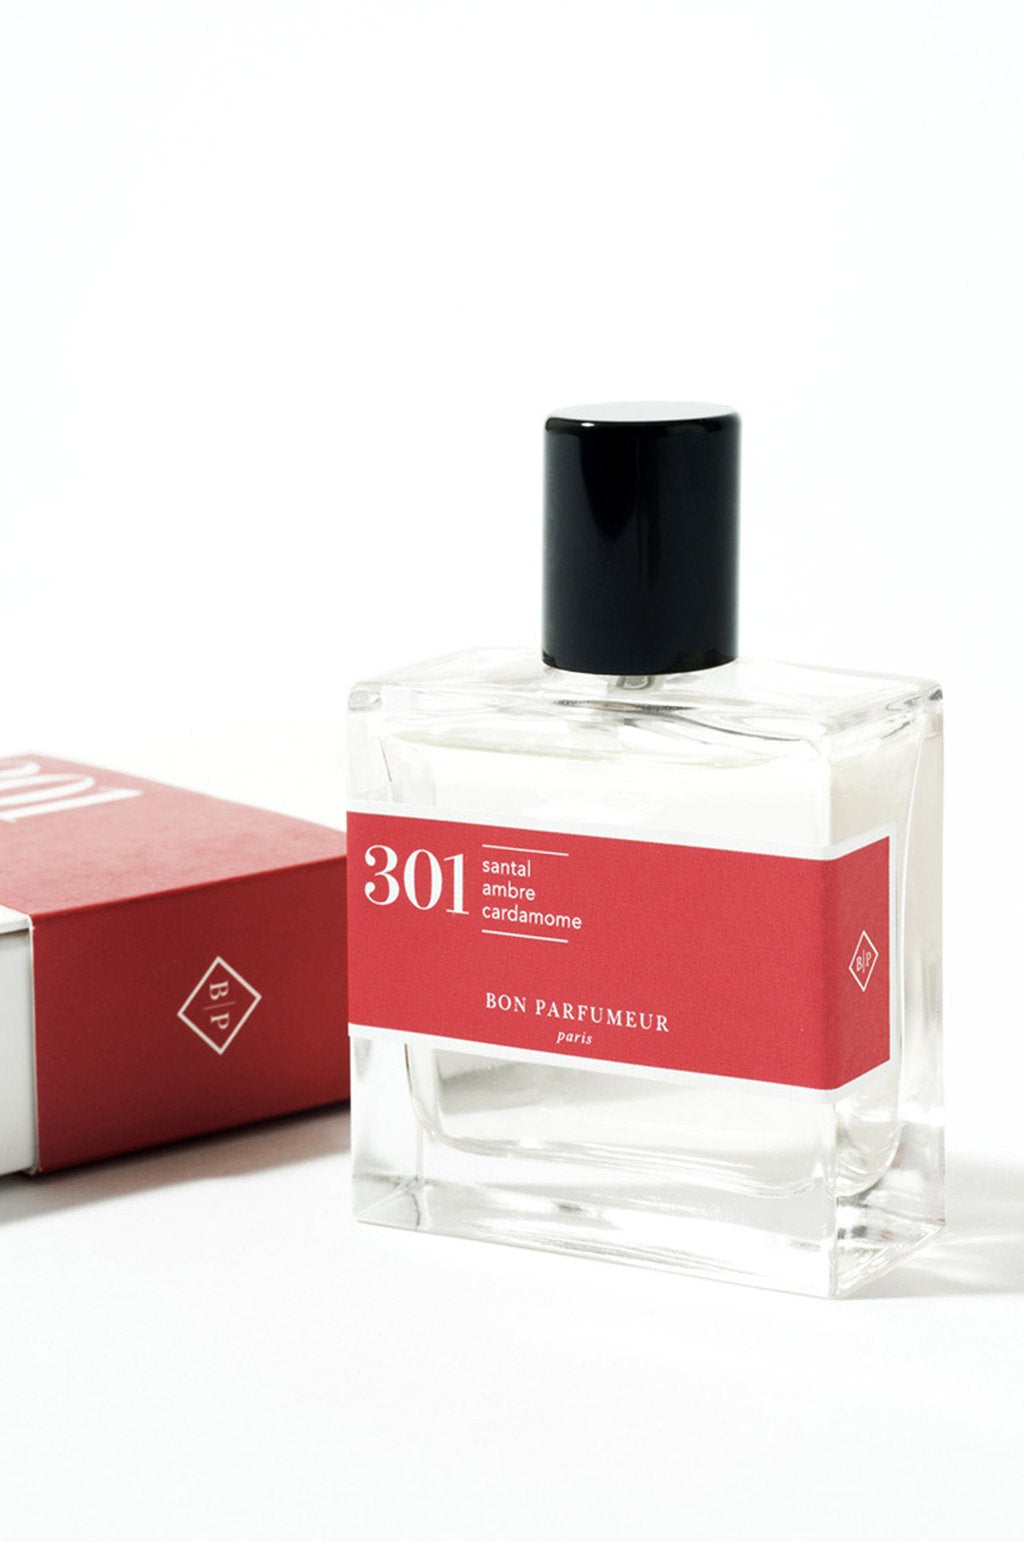 301 Eau De Parfum - The Voewood